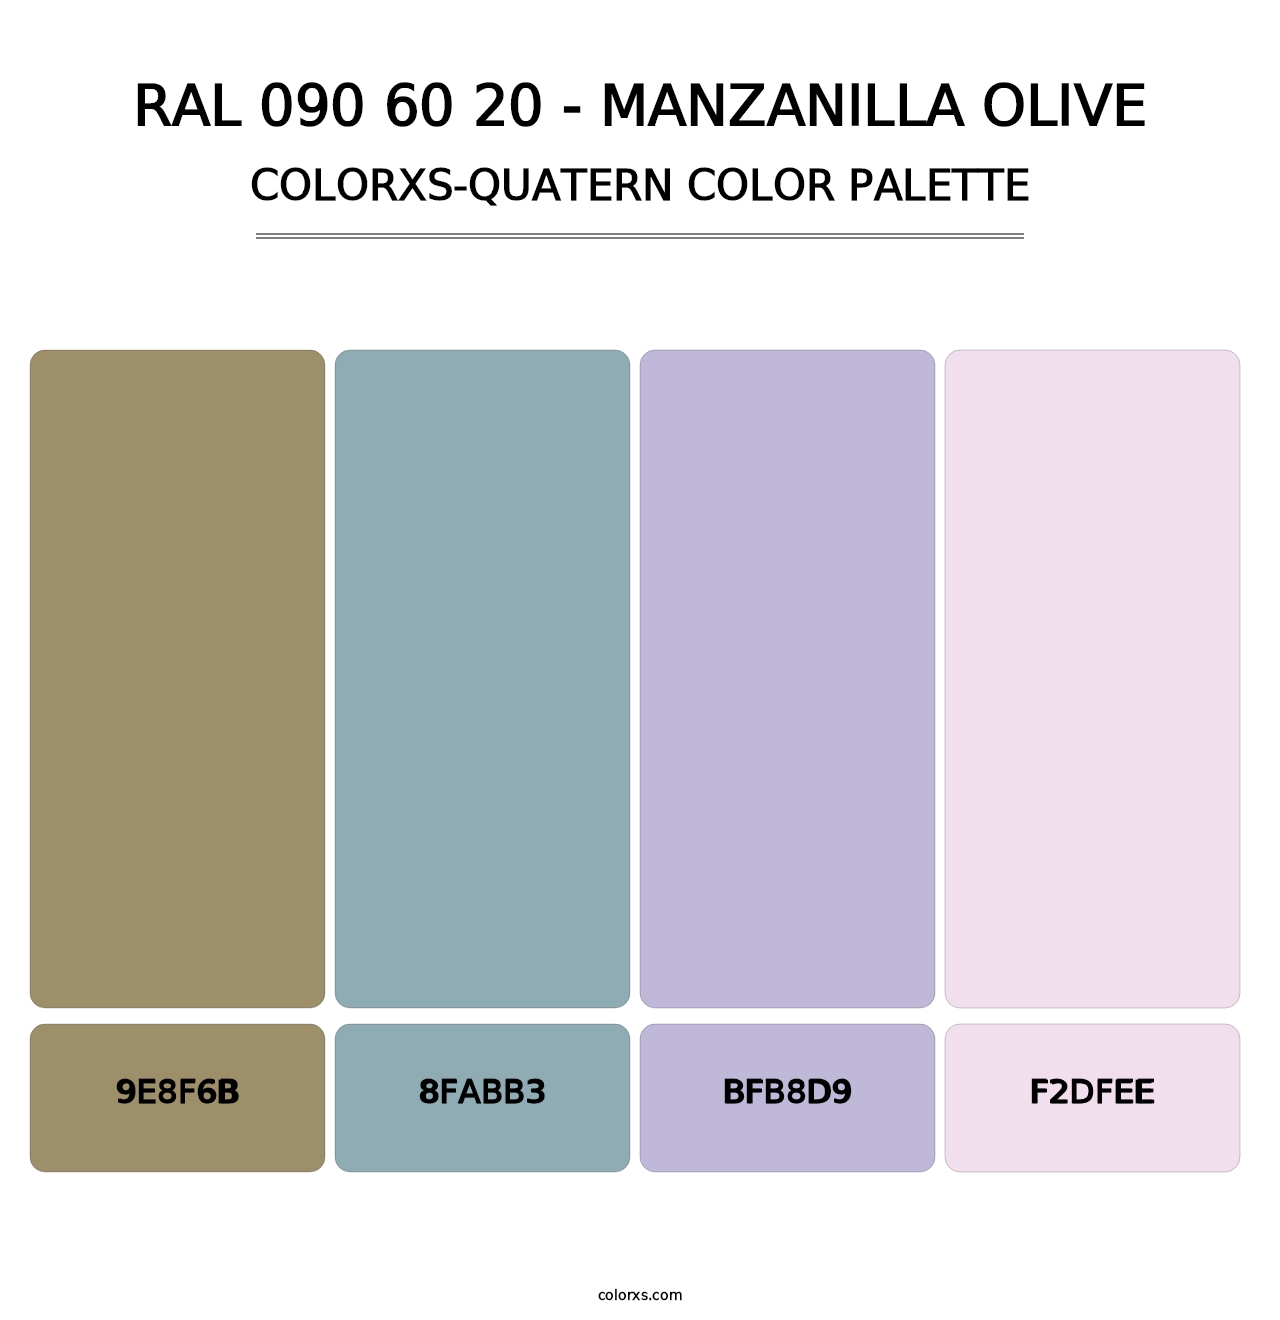 RAL 090 60 20 - Manzanilla Olive - Colorxs Quatern Palette